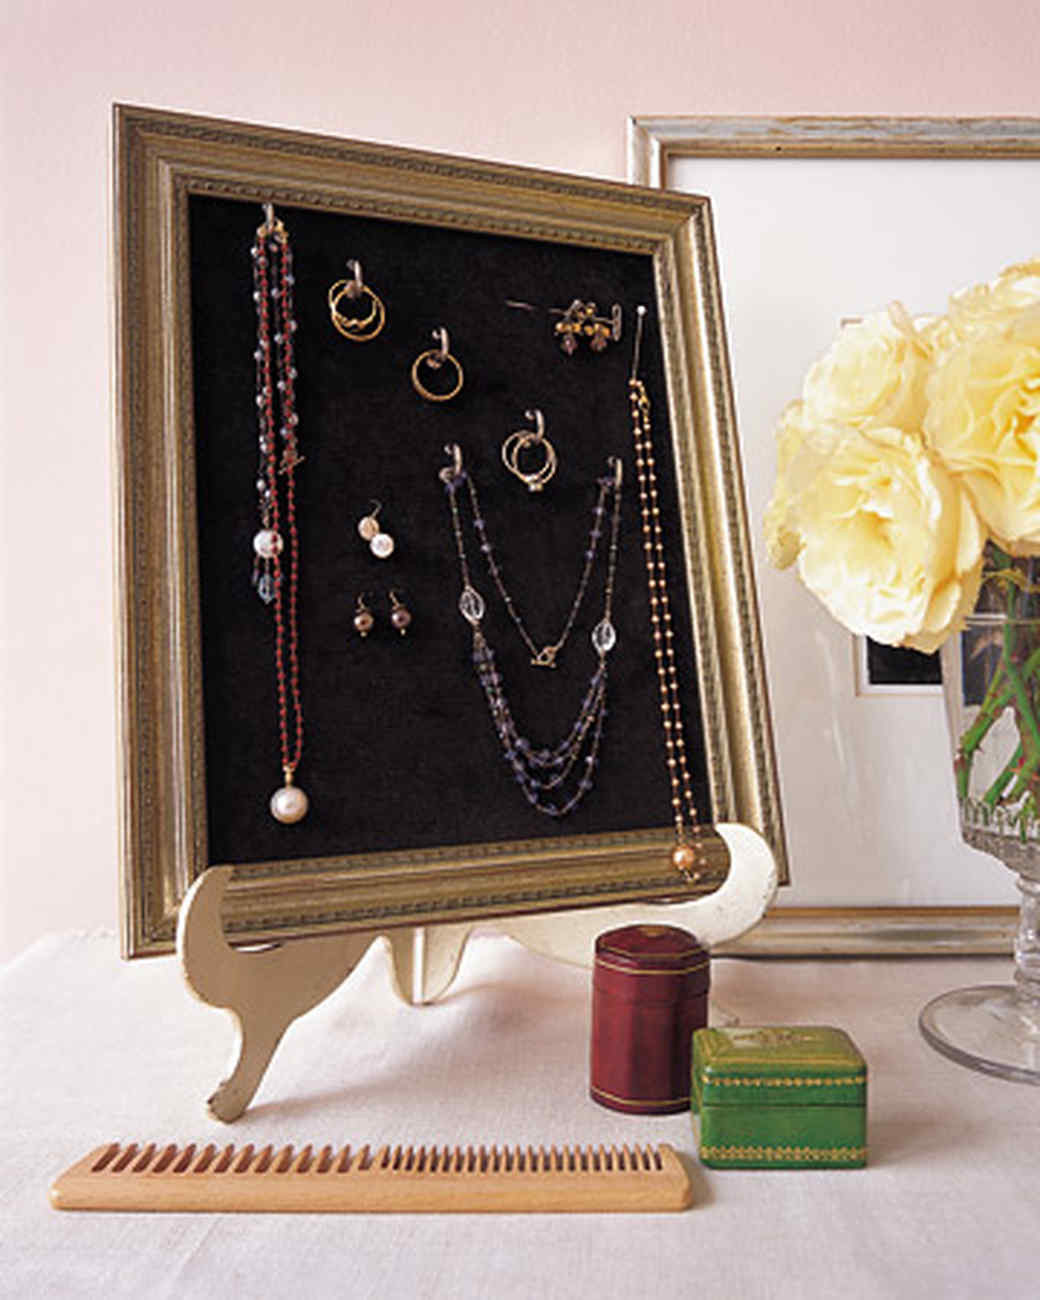 Bracelet Organizer DIY
 DIY Jewelry Organizers 13 Ways to Untangle Your Necklaces